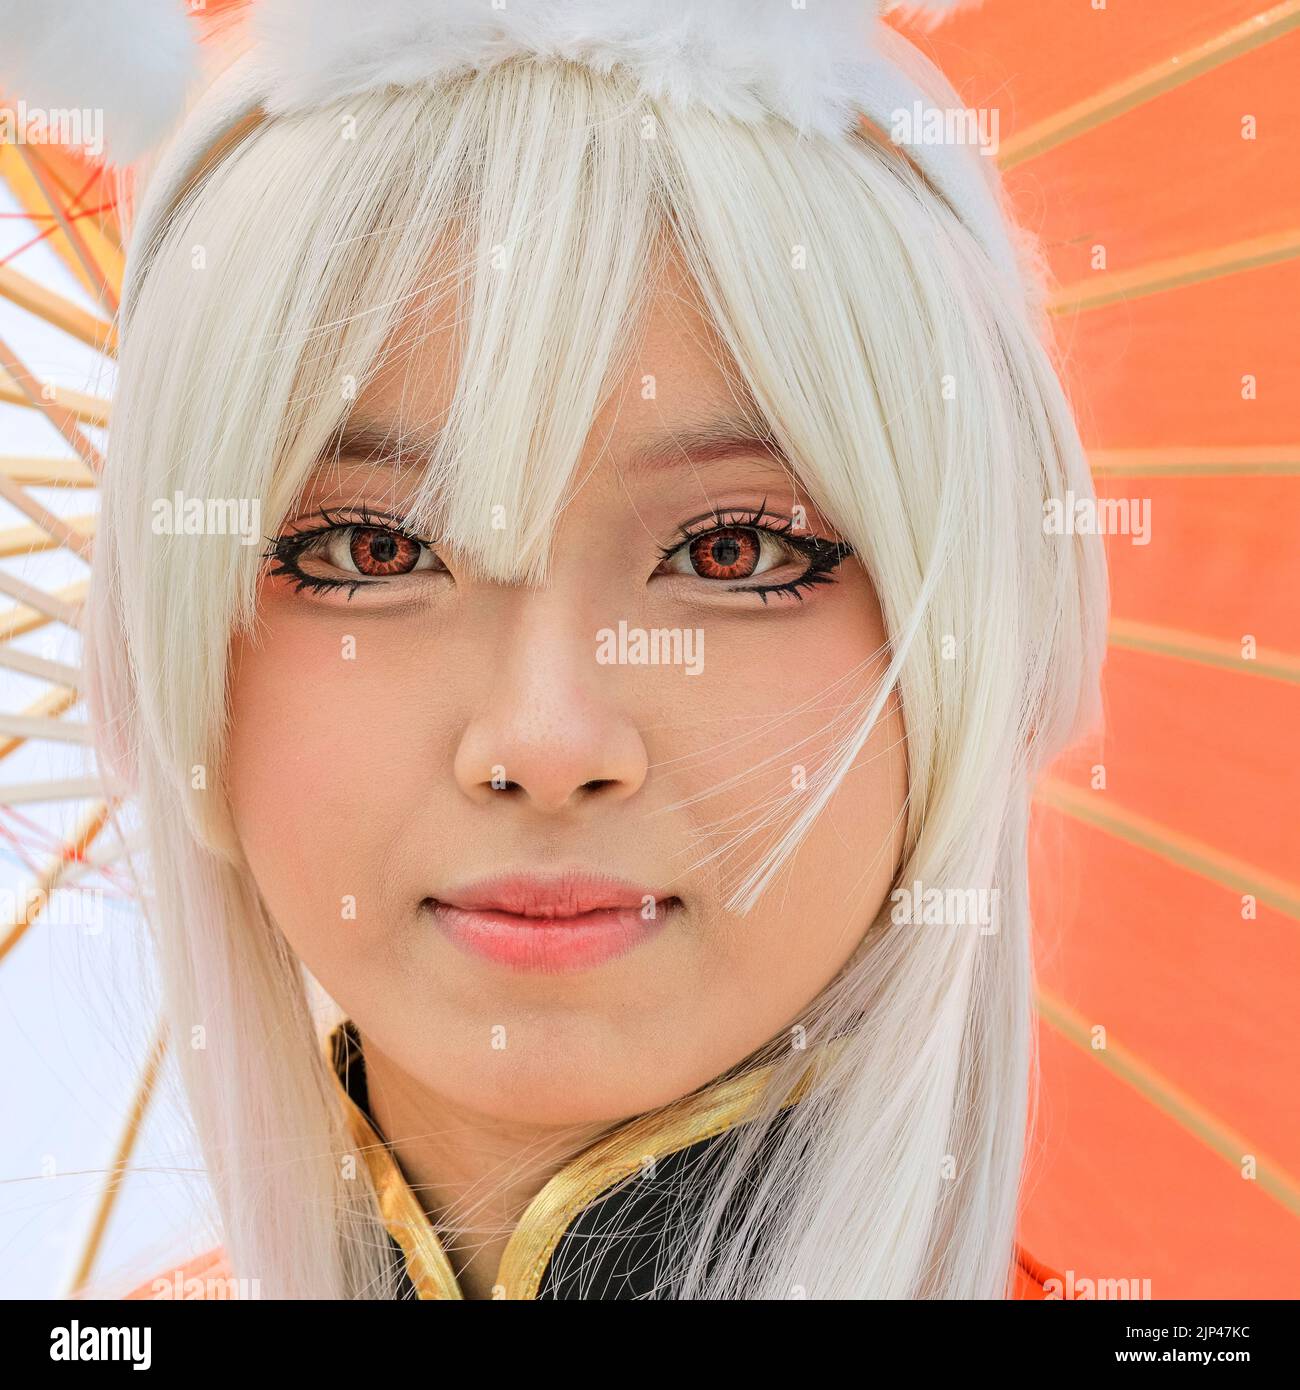 Junge asiatische Frauen spielen als Gongsun Li, Charaktere aus King of Glory (Honor of Kings), einem chinesischen Videospiel. Stockfoto